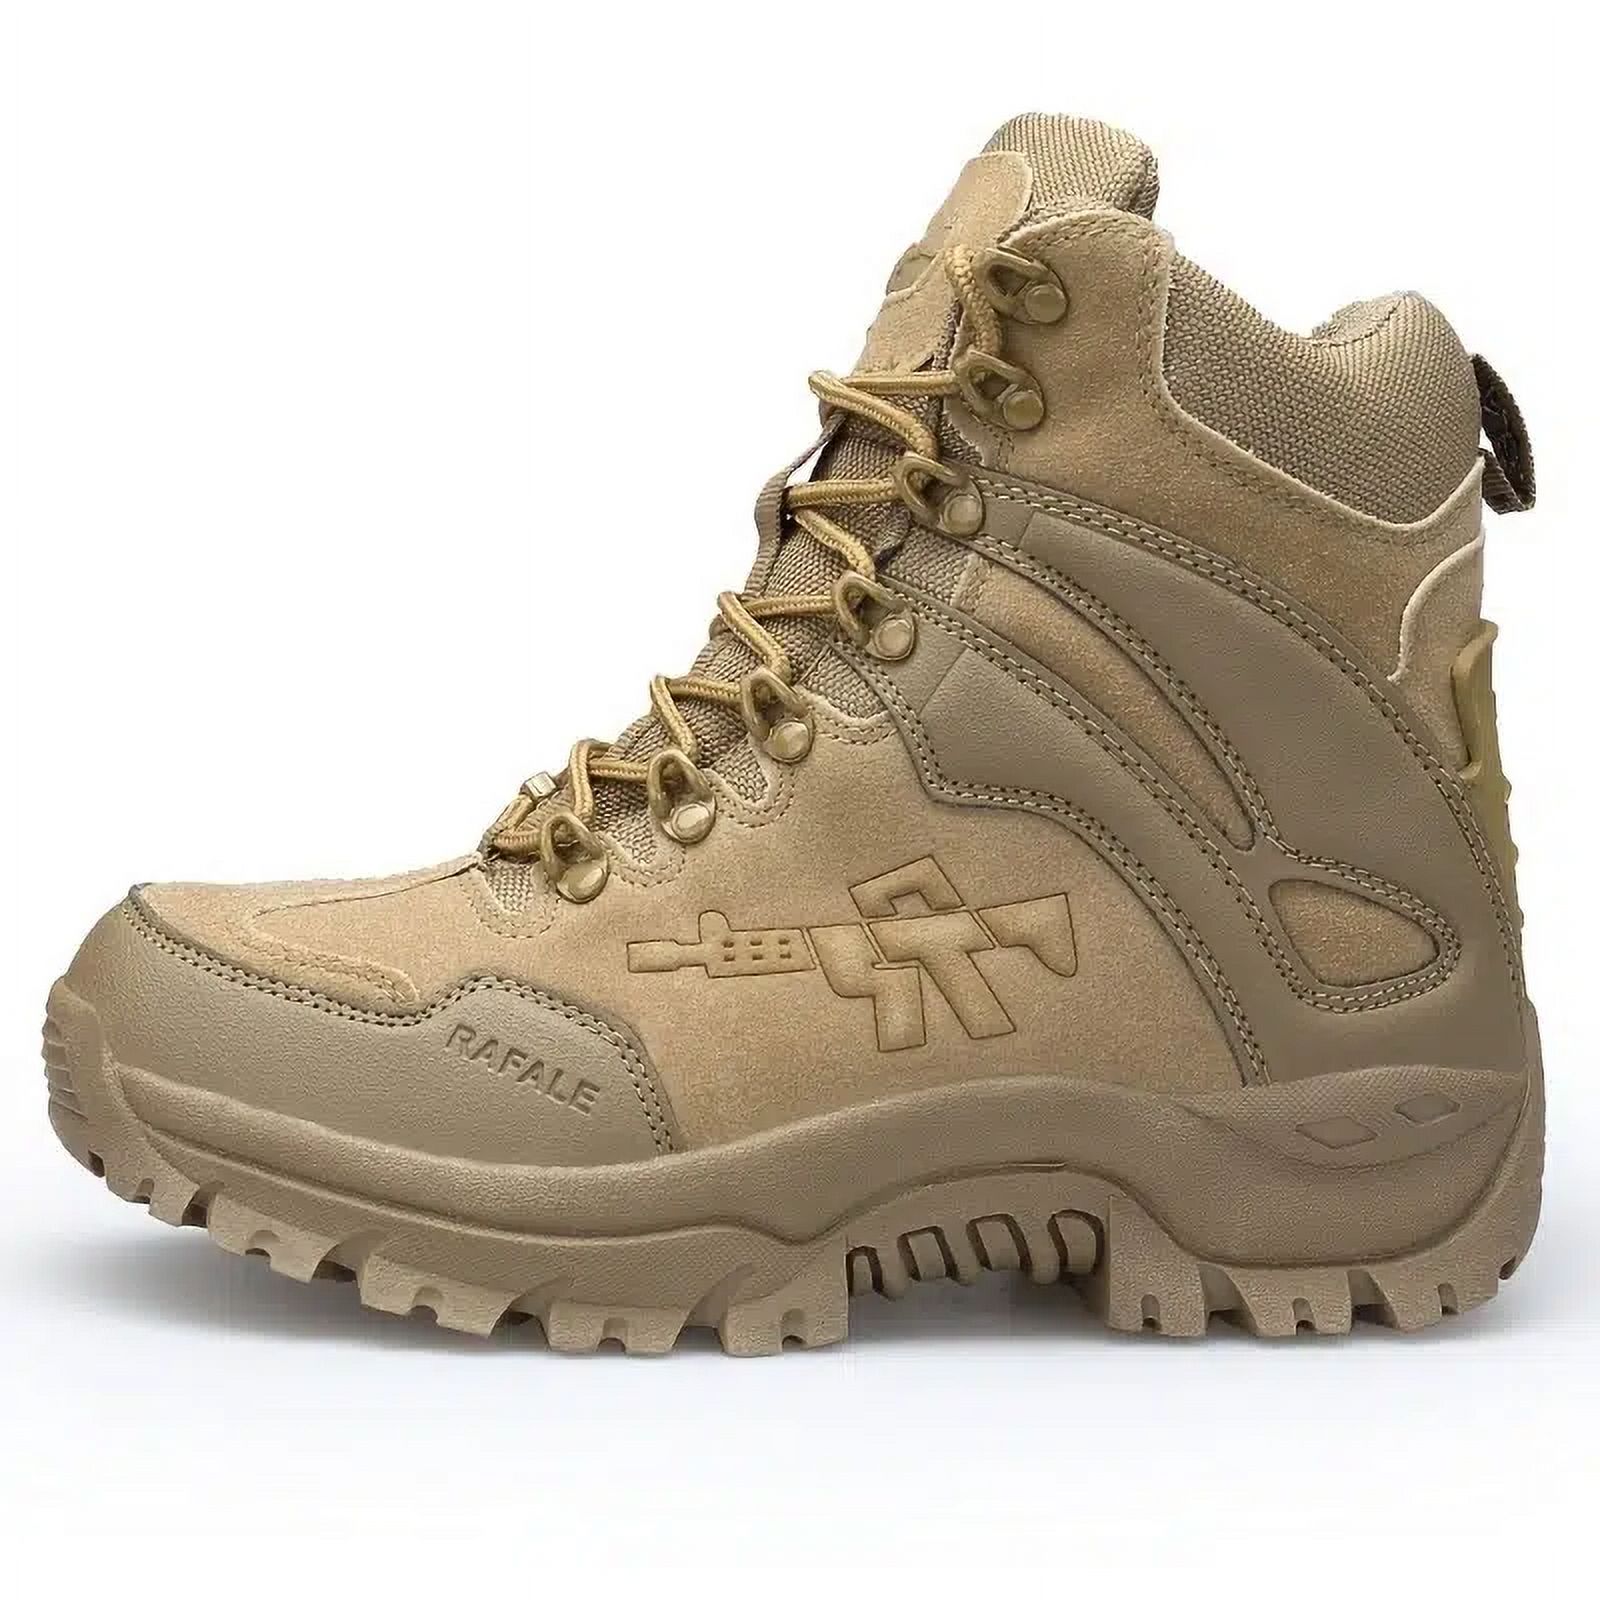 Men's Waterproof Hiking Boots, Outdoor Non-Slip Warm Water-Resistant ...